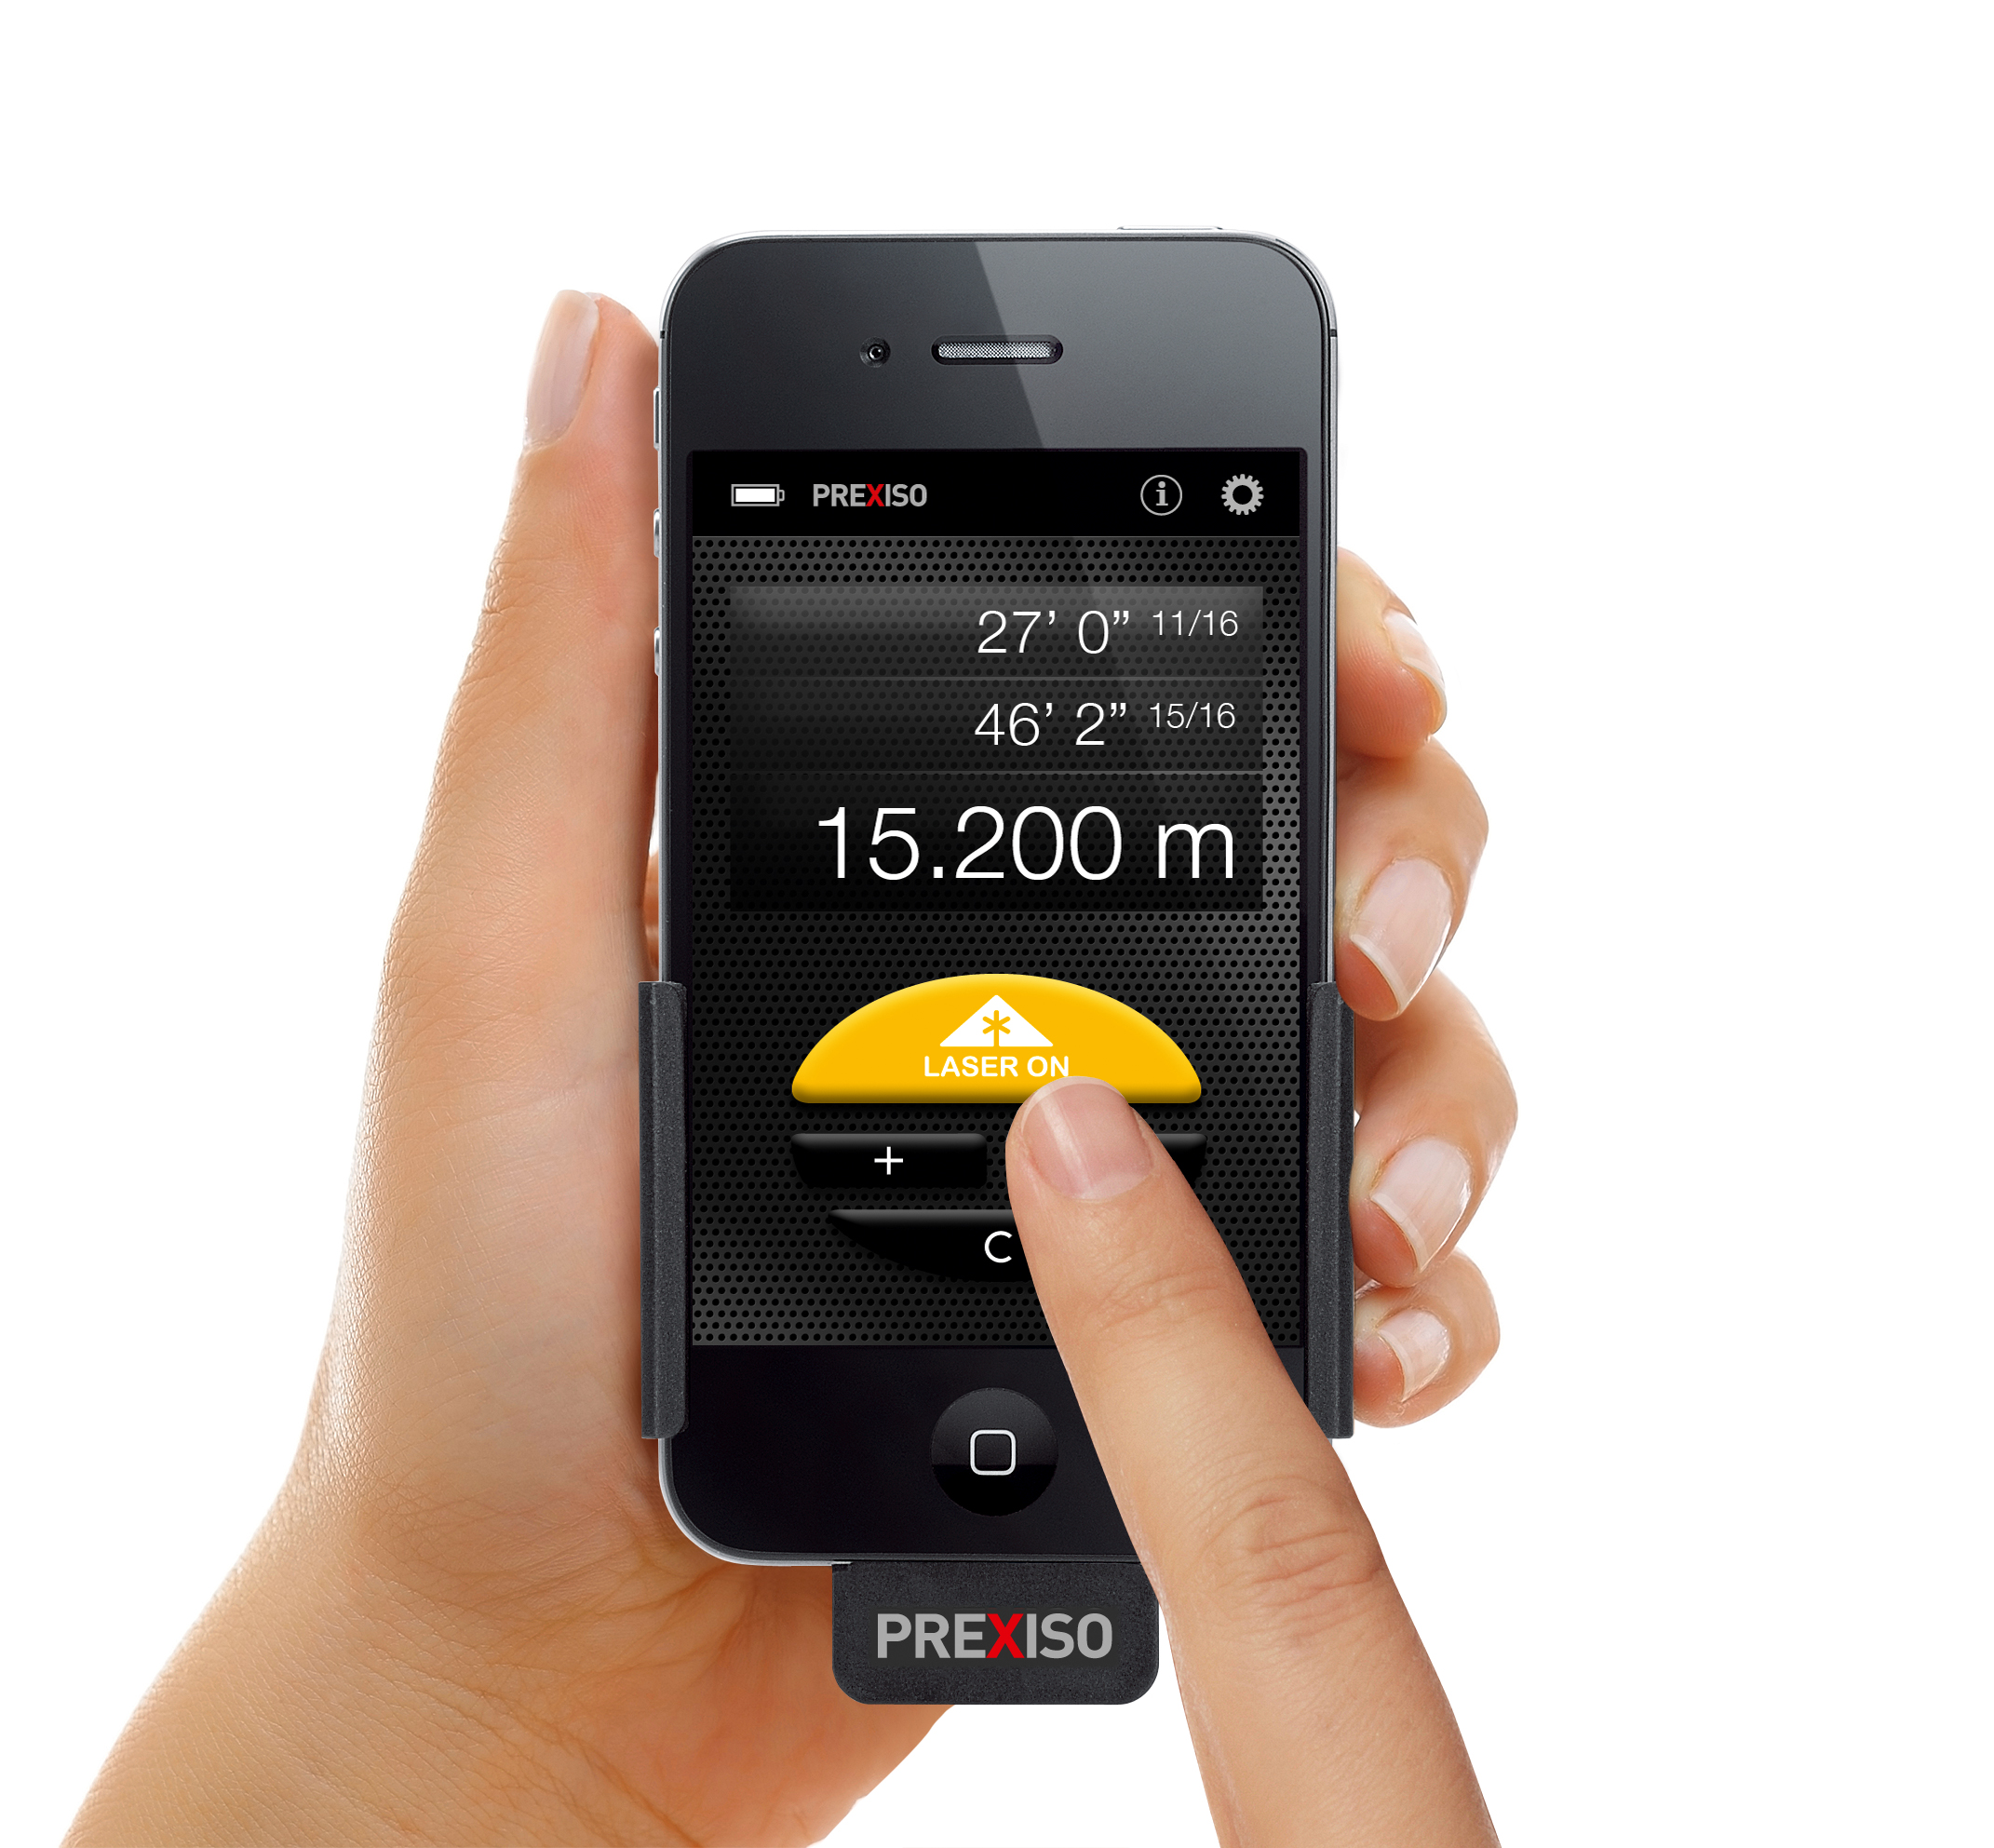 Prexiso Ic4 Iphone用測定アクセサリー ライカ ジオシステムズ株式会社のプレスリリース